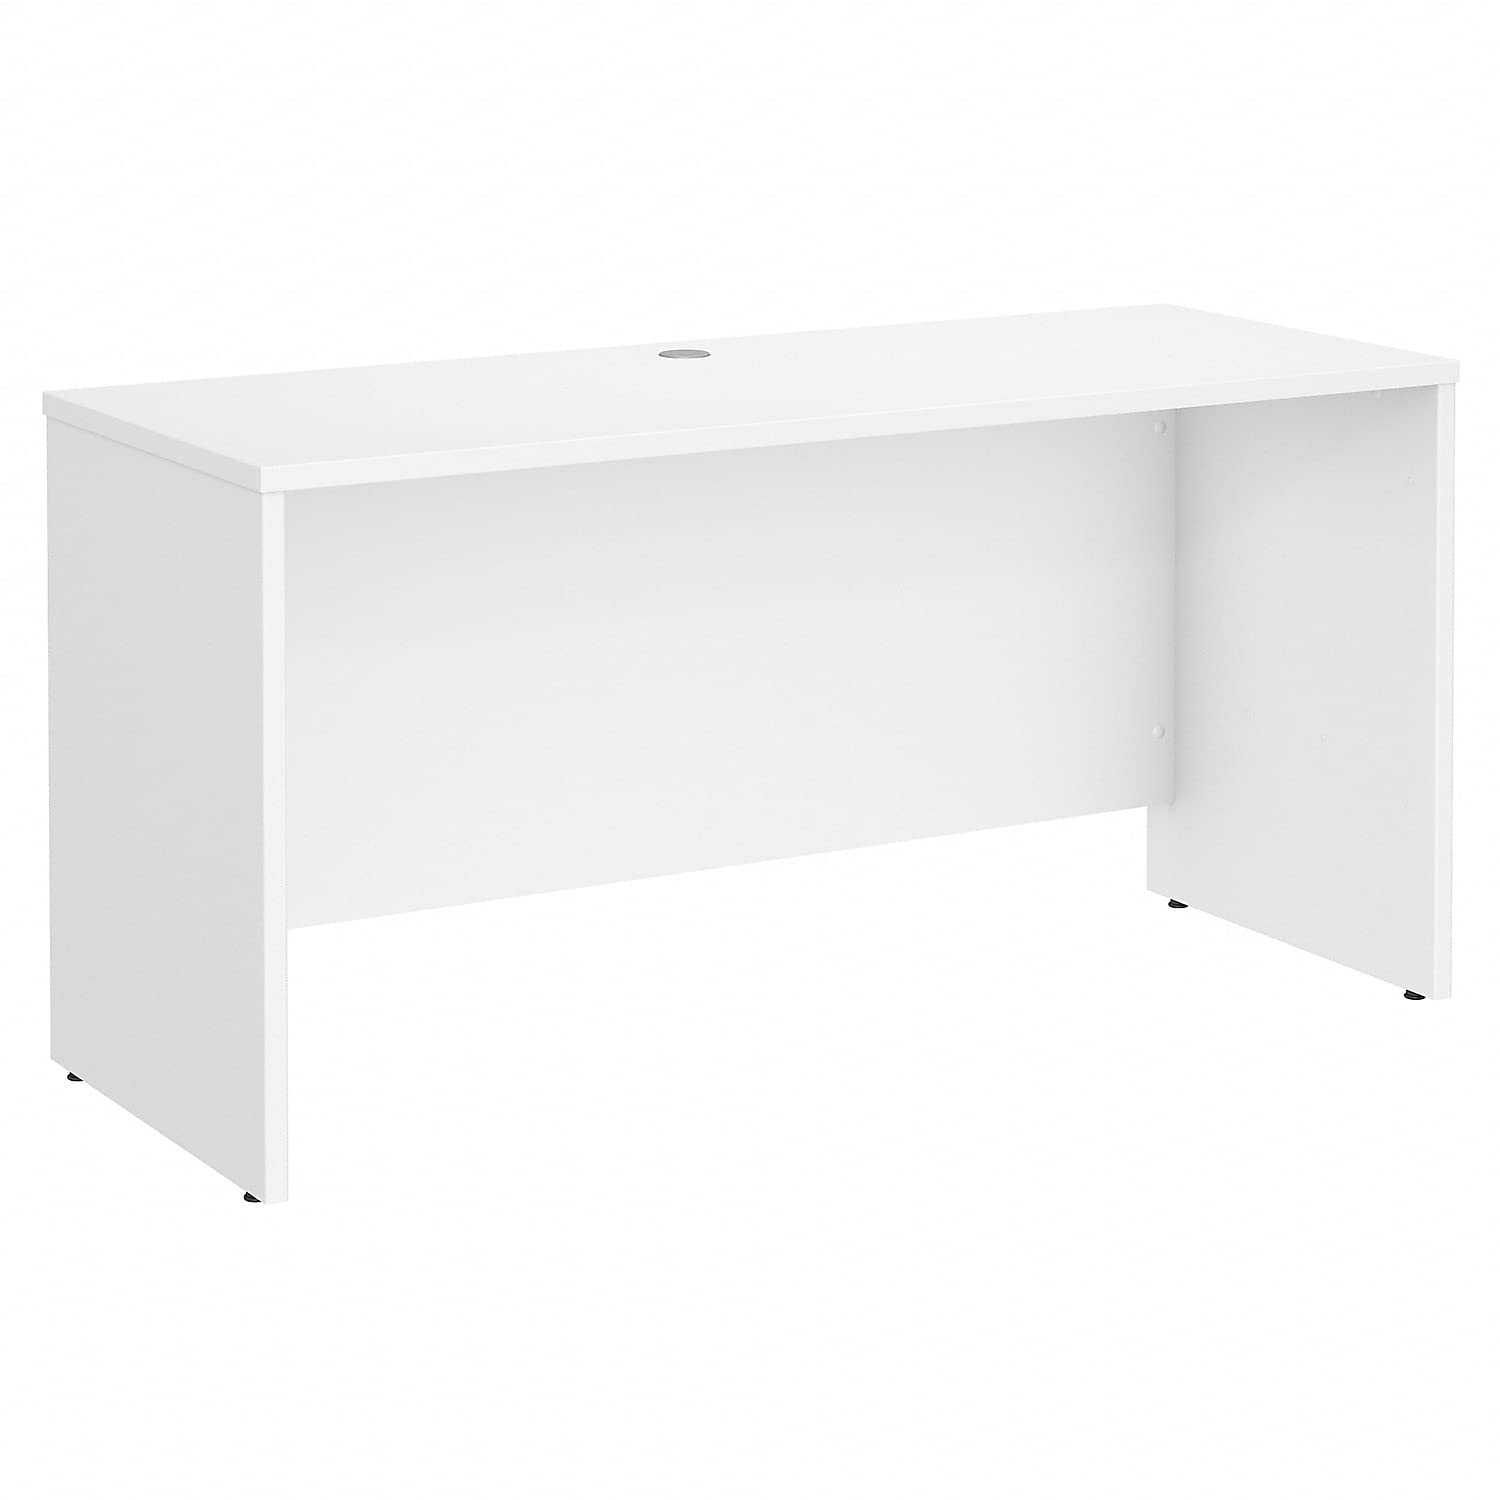 Bush Business Furniture Письменный стол Credenza Studio C 60W x 24D в белом цвете